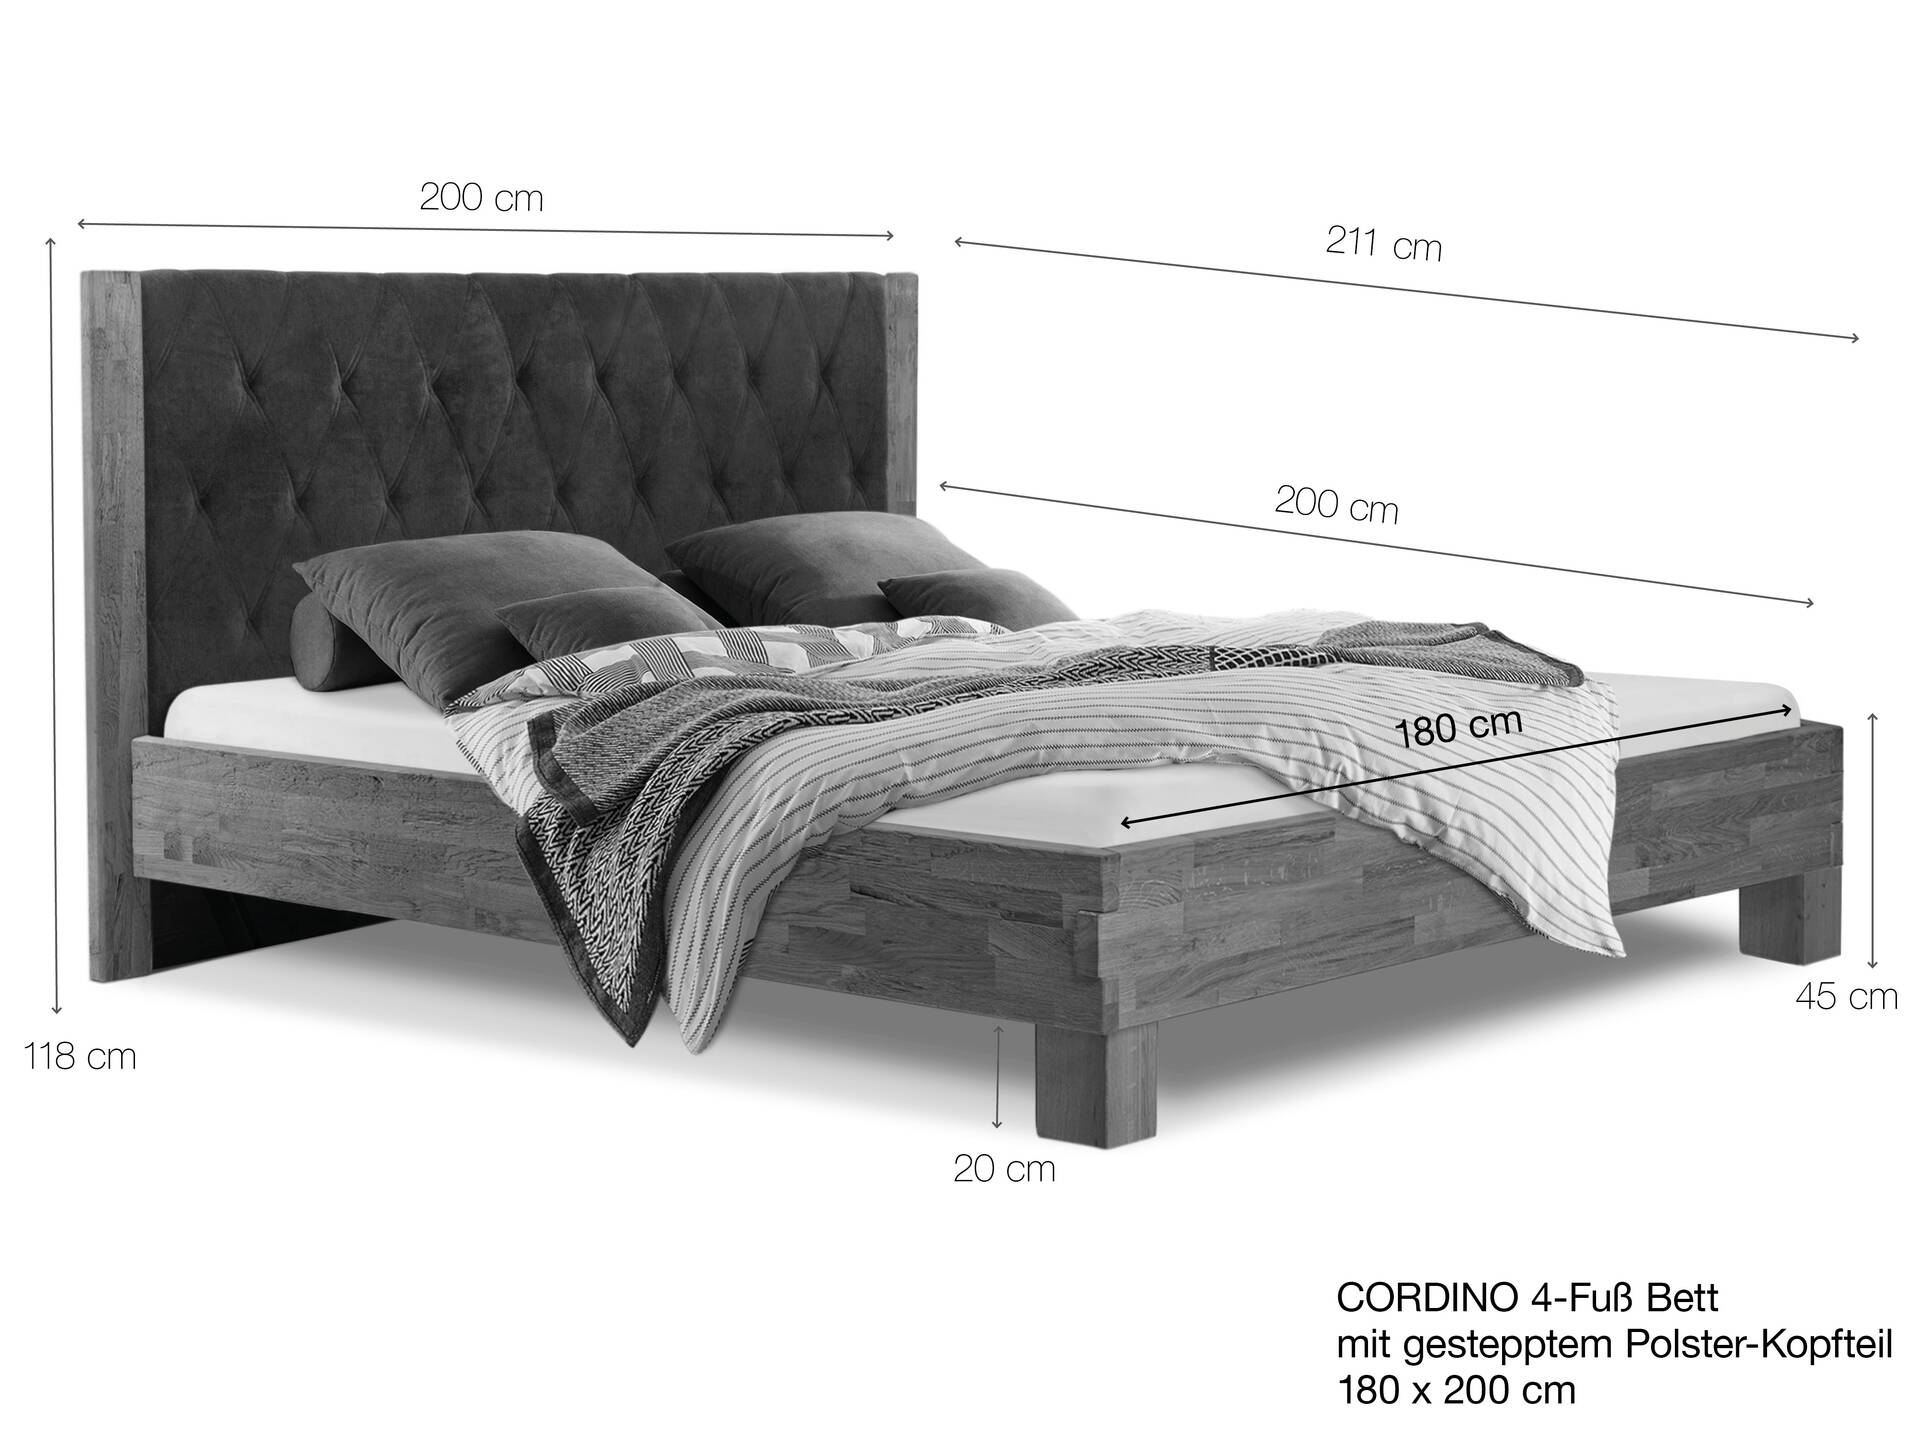 CORDINO 4-Fuß-Bett aus Eiche mit gestepptem Polster-Kopfteil, Material Massivholz 180 x 200 cm | Eiche unbehandelt | Kunstleder Braun | gebürstet